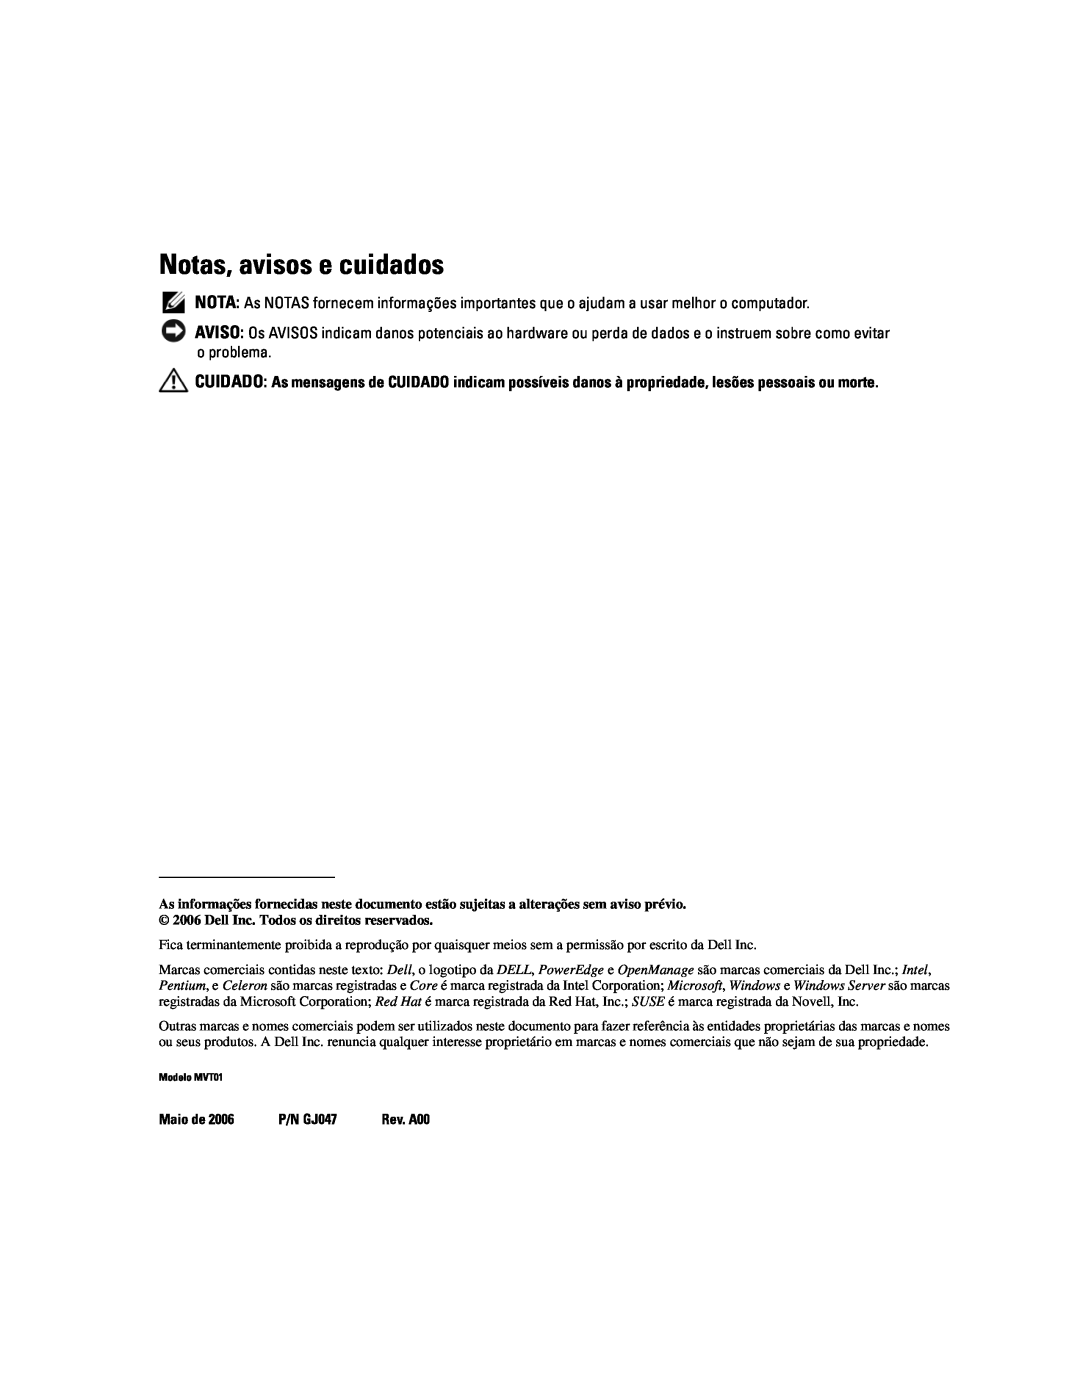 Dell MVT01 manual Notas, avisos e cuidados, Maio de, P/N GJ047 